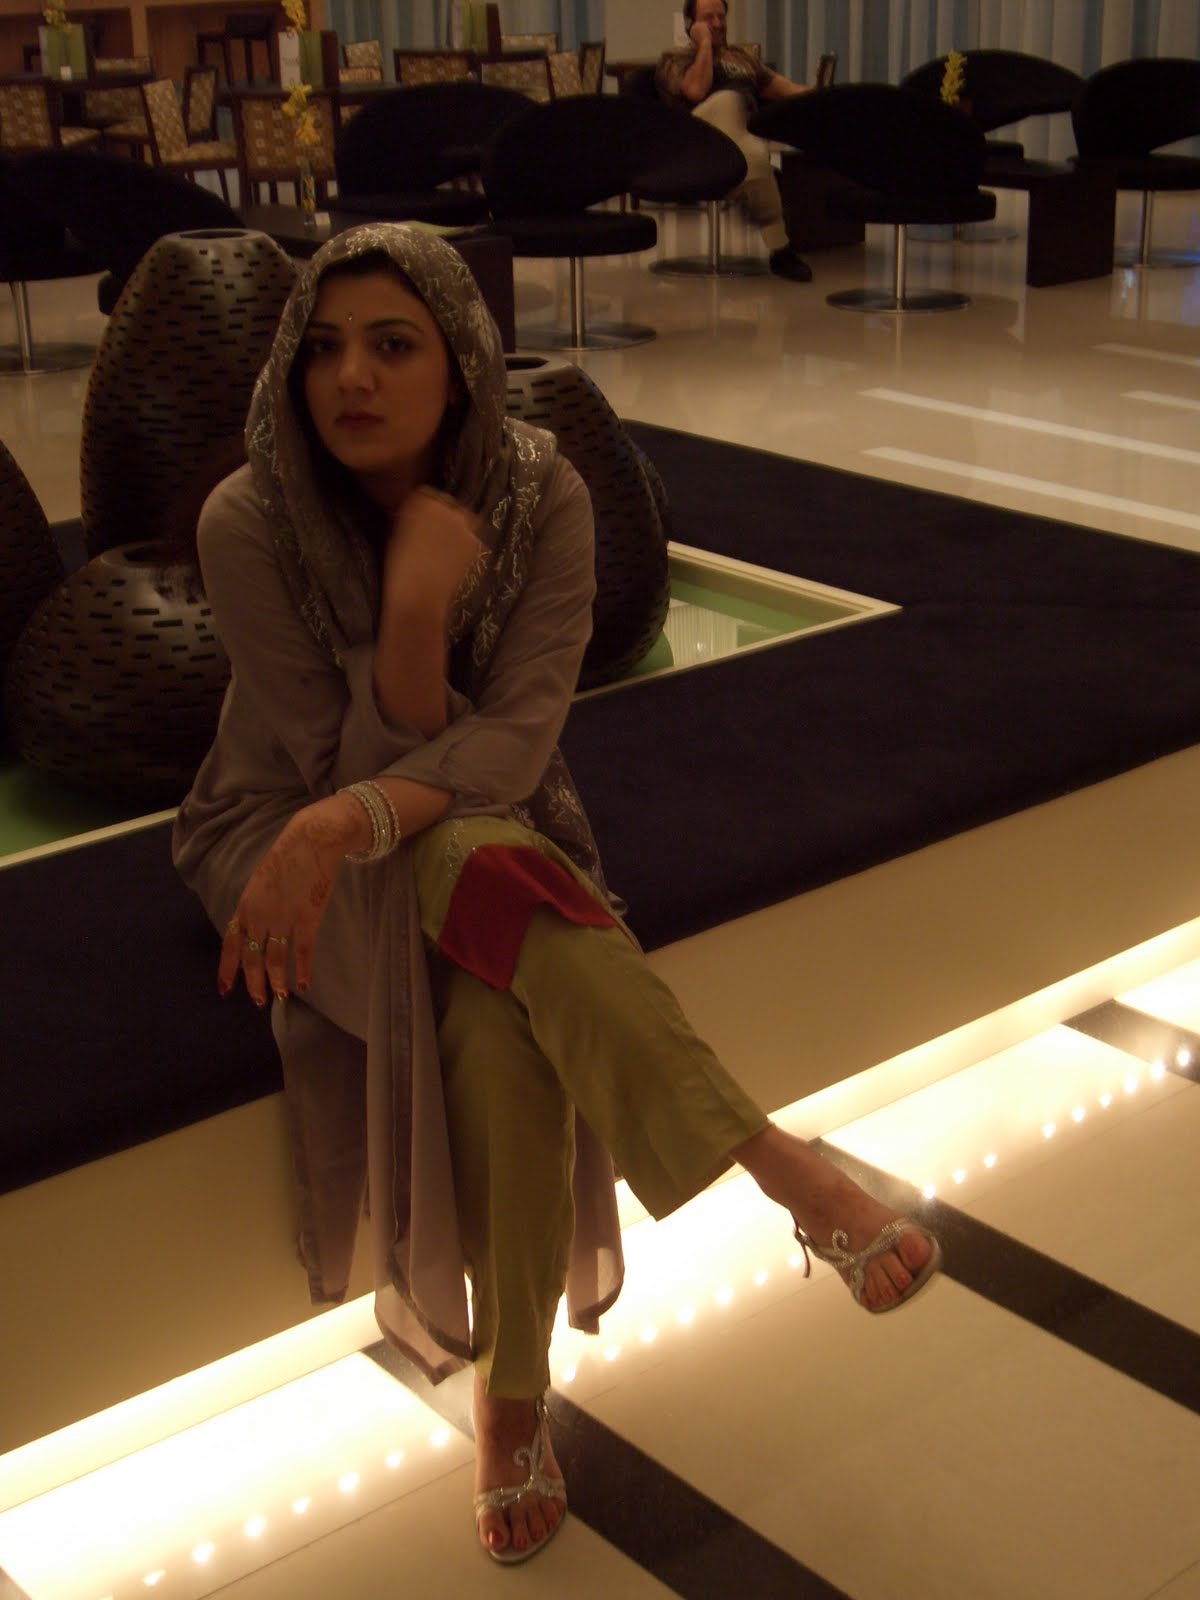 World Arabian Girls Photos Cairo Aunty In Dubai Shopping Mall